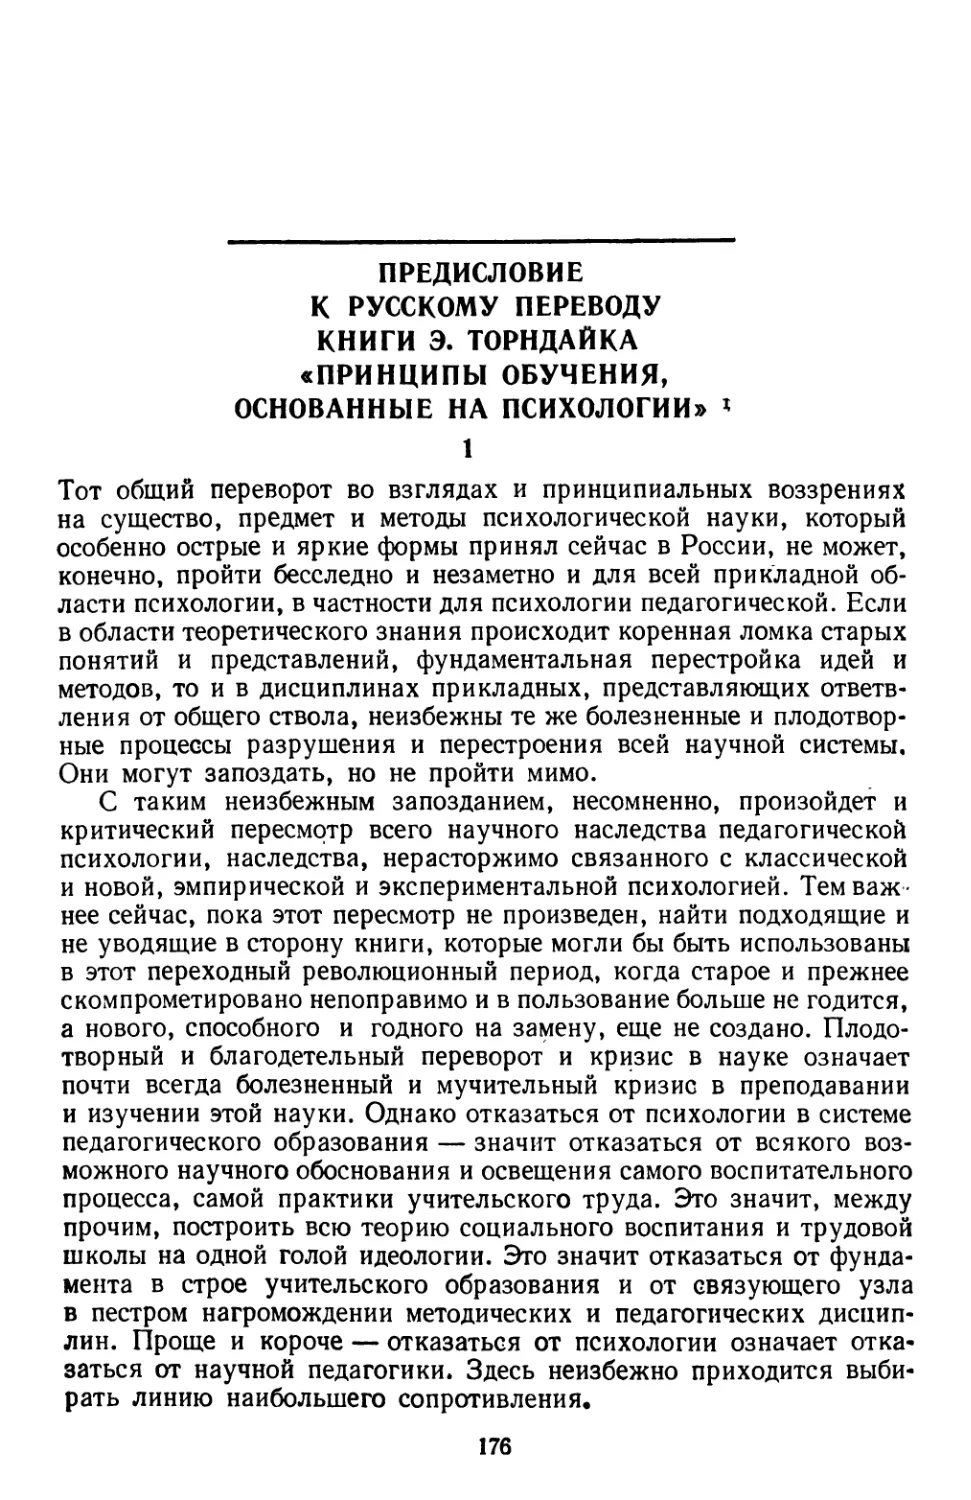 Предисловие к русскому переводу книги Э. Торндайка «принципы обучения, основанные на психологии»